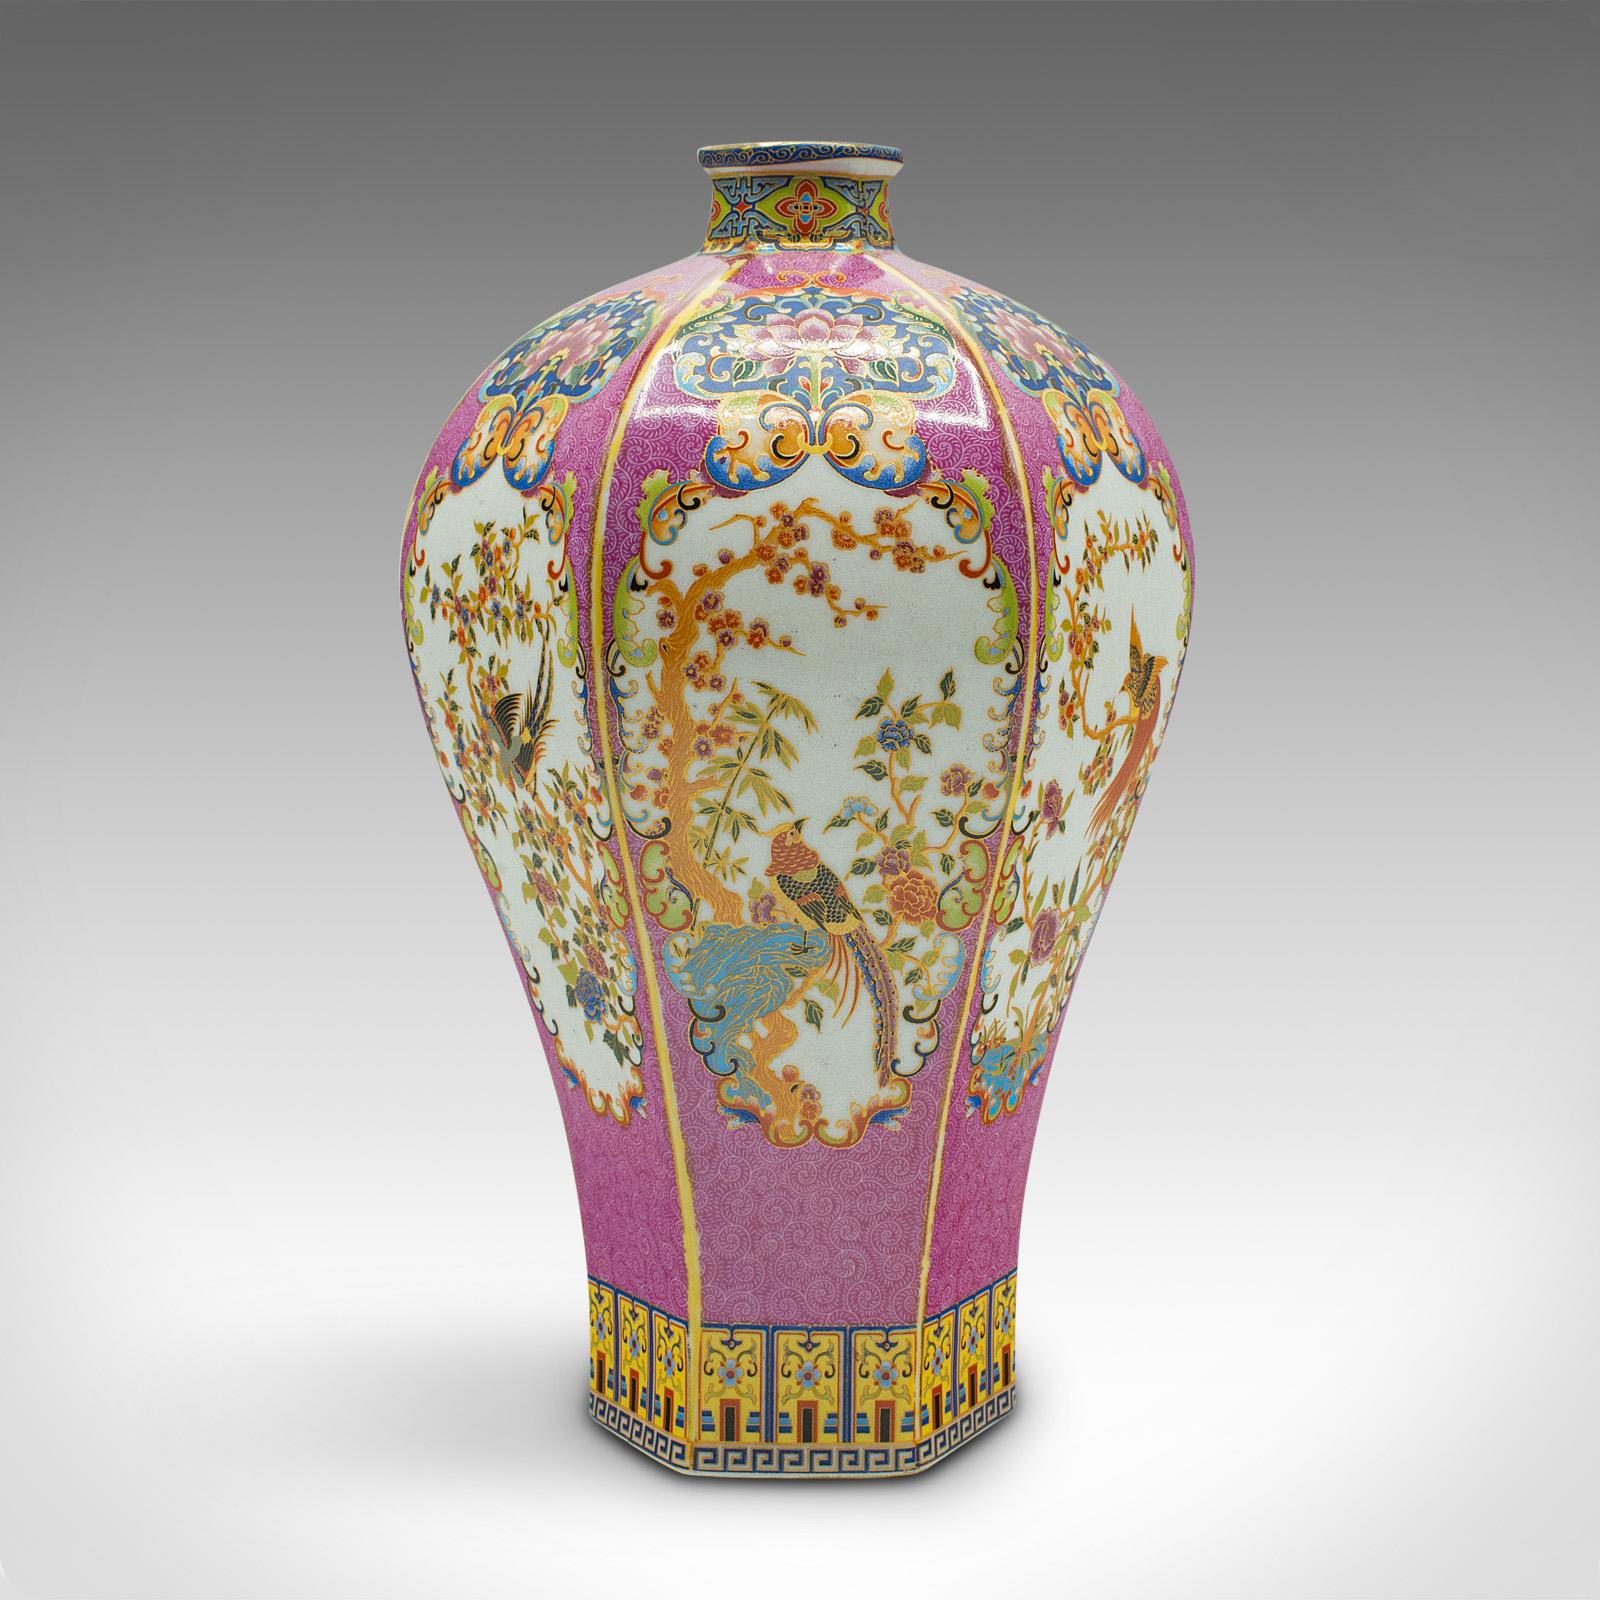 Dies ist eine antike sechseckige Blumenvase. Eine chinesische Baluster-Urne aus Keramik aus der späten viktorianischen Periode, um 1900.

Ein Leckerbissen mit schönen Farben und einer faszinierenden sechseckigen Form
Zeigt eine wünschenswerte